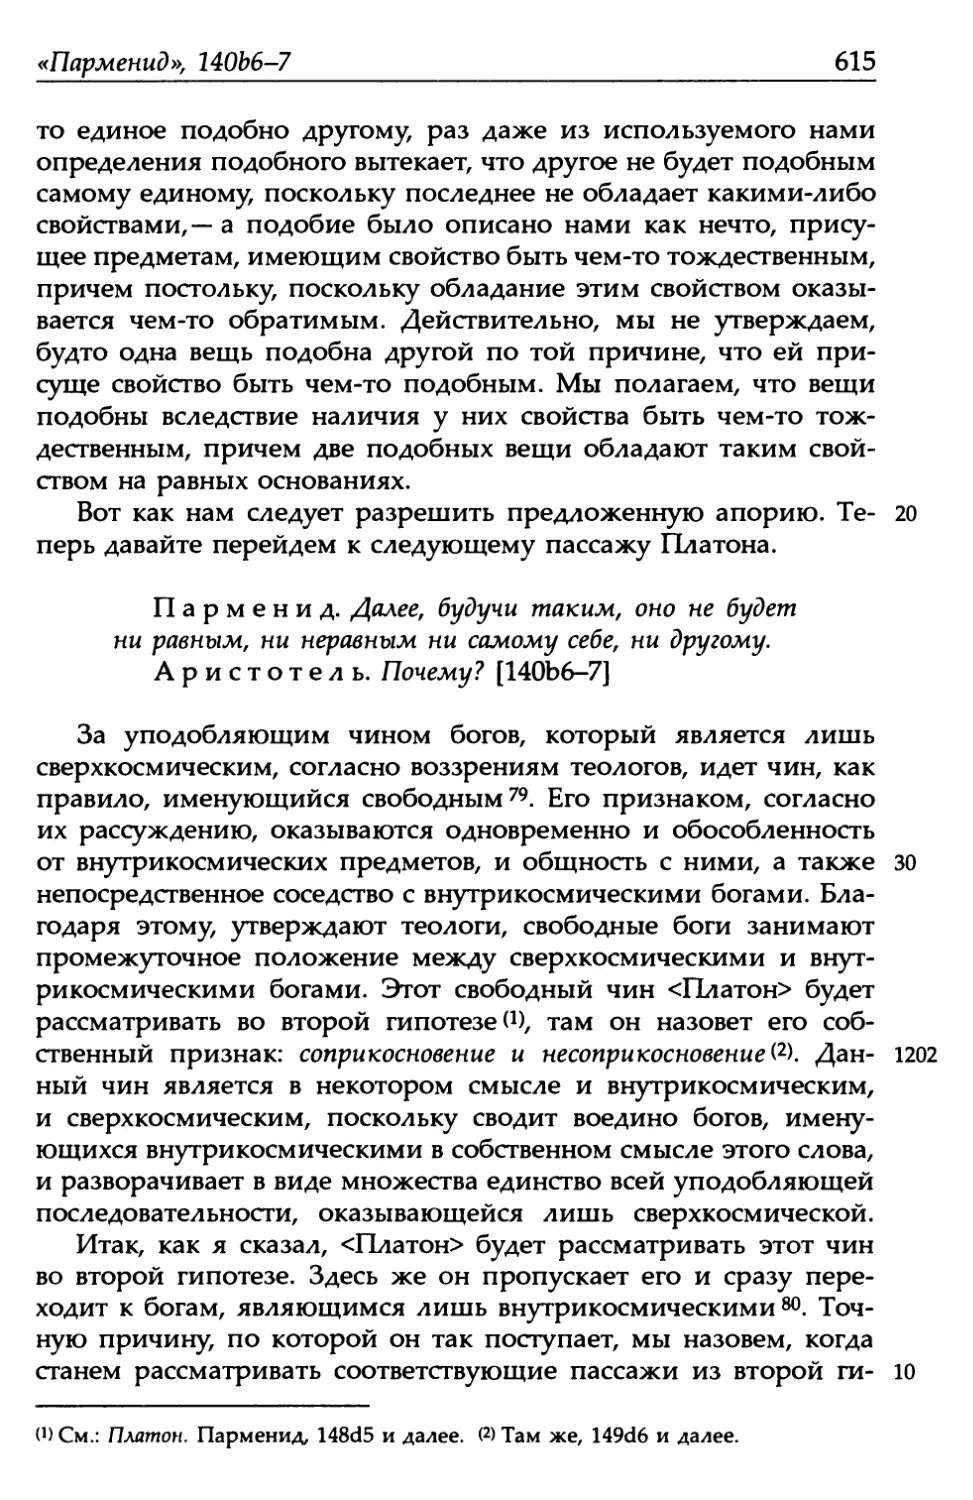 «Парменид», 140b6-7